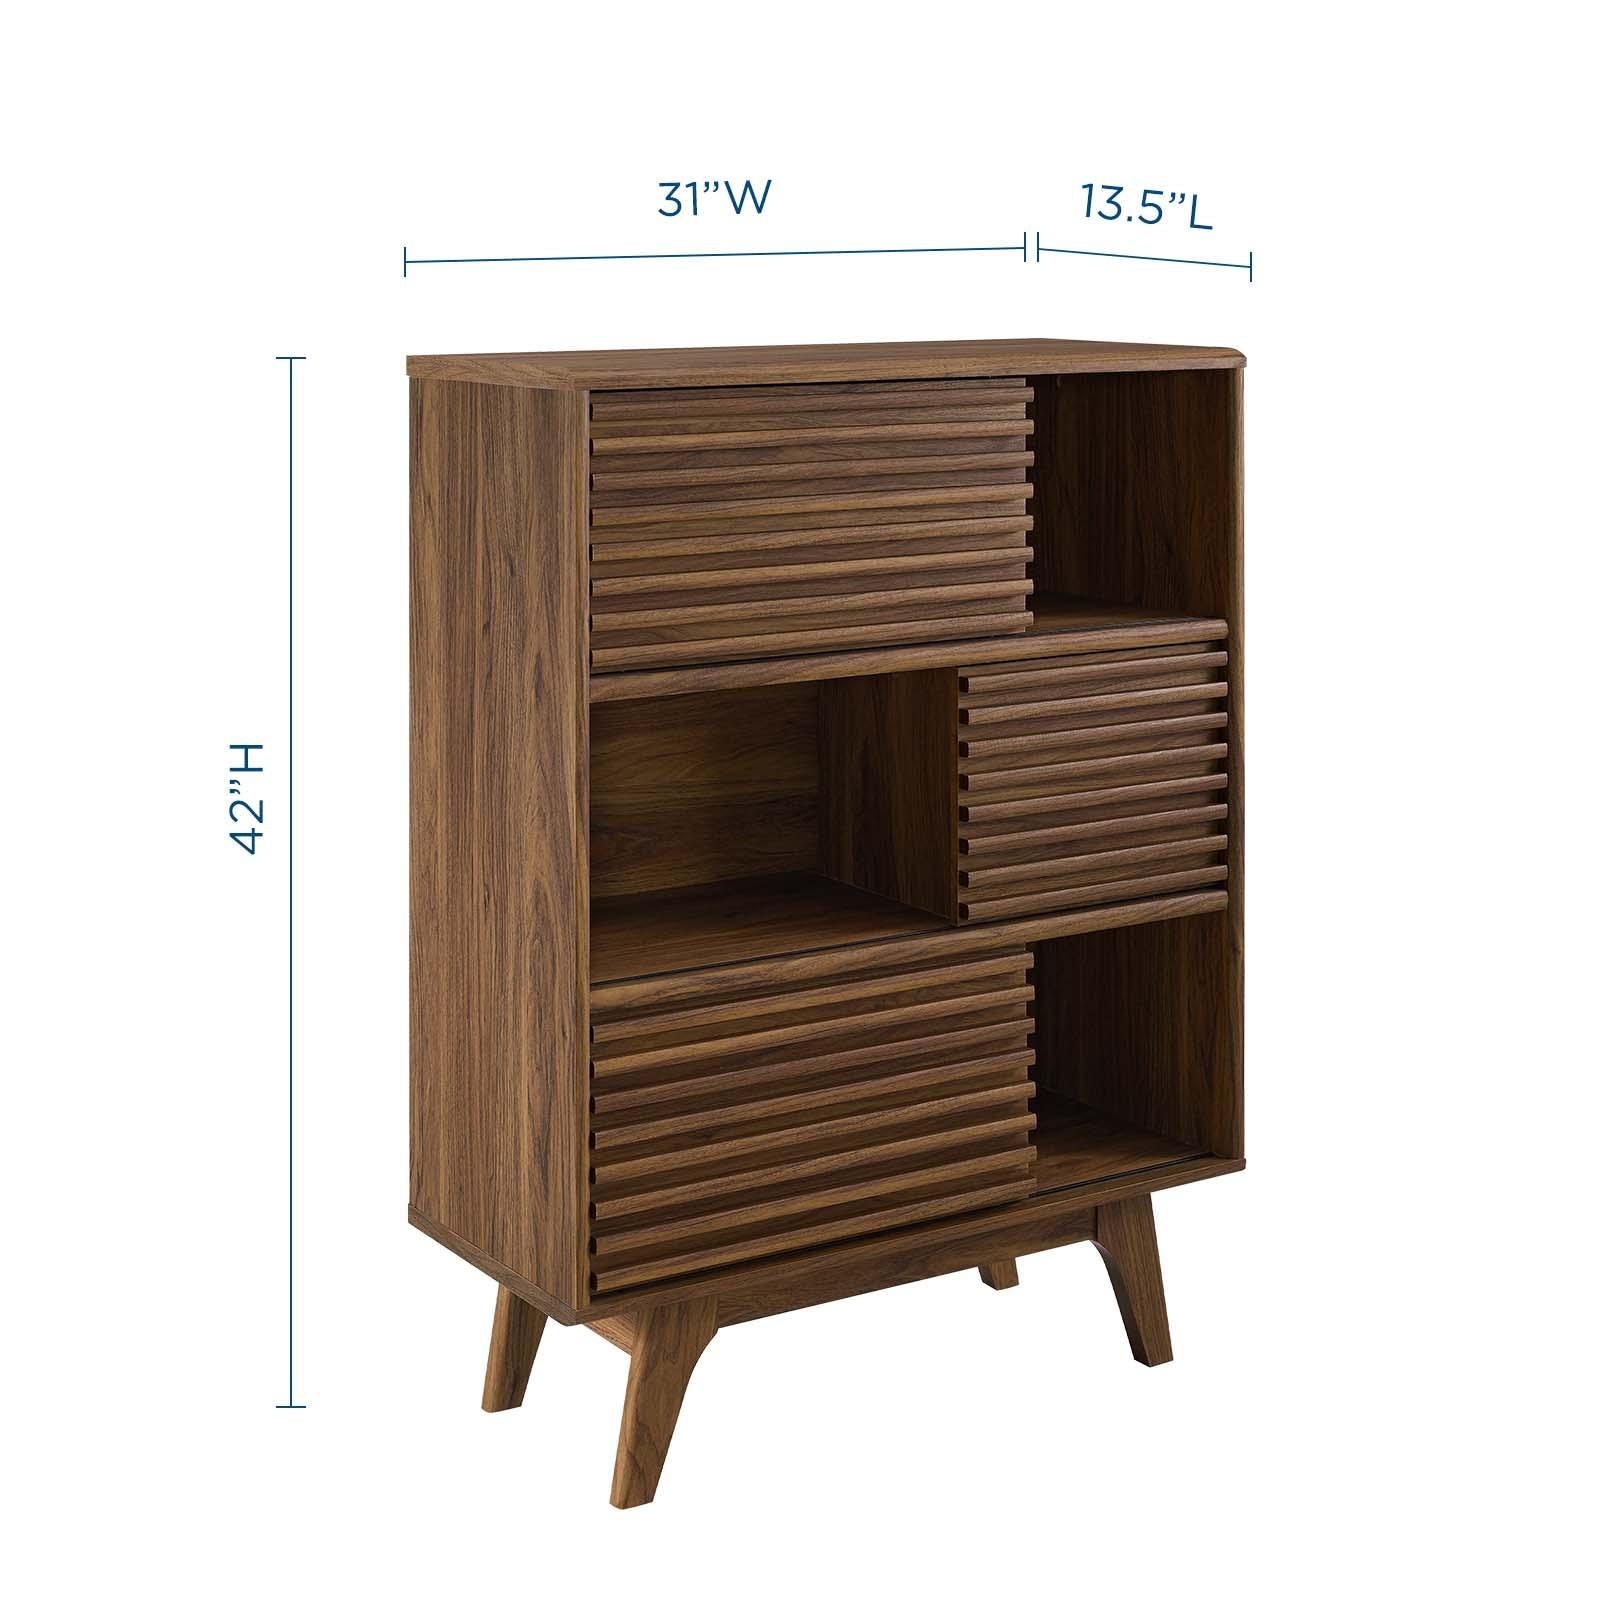 Modway Furniture Modern Render Three-Tier Display Storage Cabinet Stand - EEI-3343